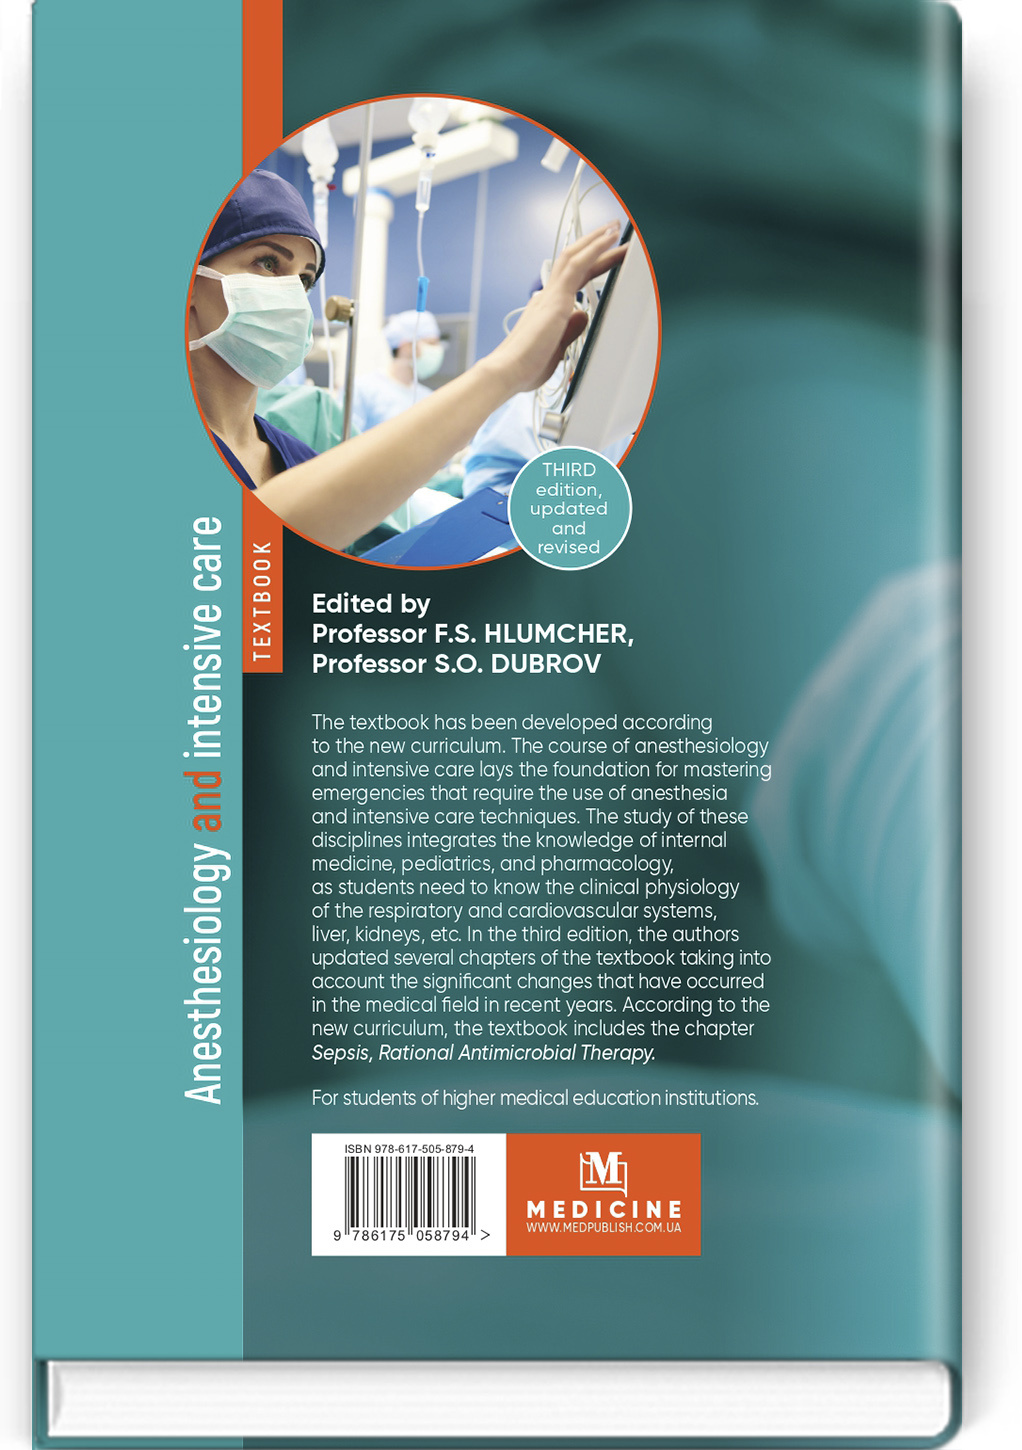 Anesthesiology and intensive care: textbook. Автор — F.S. Hlumcher, Yu.L. Kuchyn, S.O. Dubrov, L.V. Usenko, Yu.Yu. Kobeliatskyi, O.V. Oliynyk, N.O. Voloshyna, O.V. Tsariov, S.M. Yaroslavska, K.Yu. Belka, Ye.Yu. Diomin. 